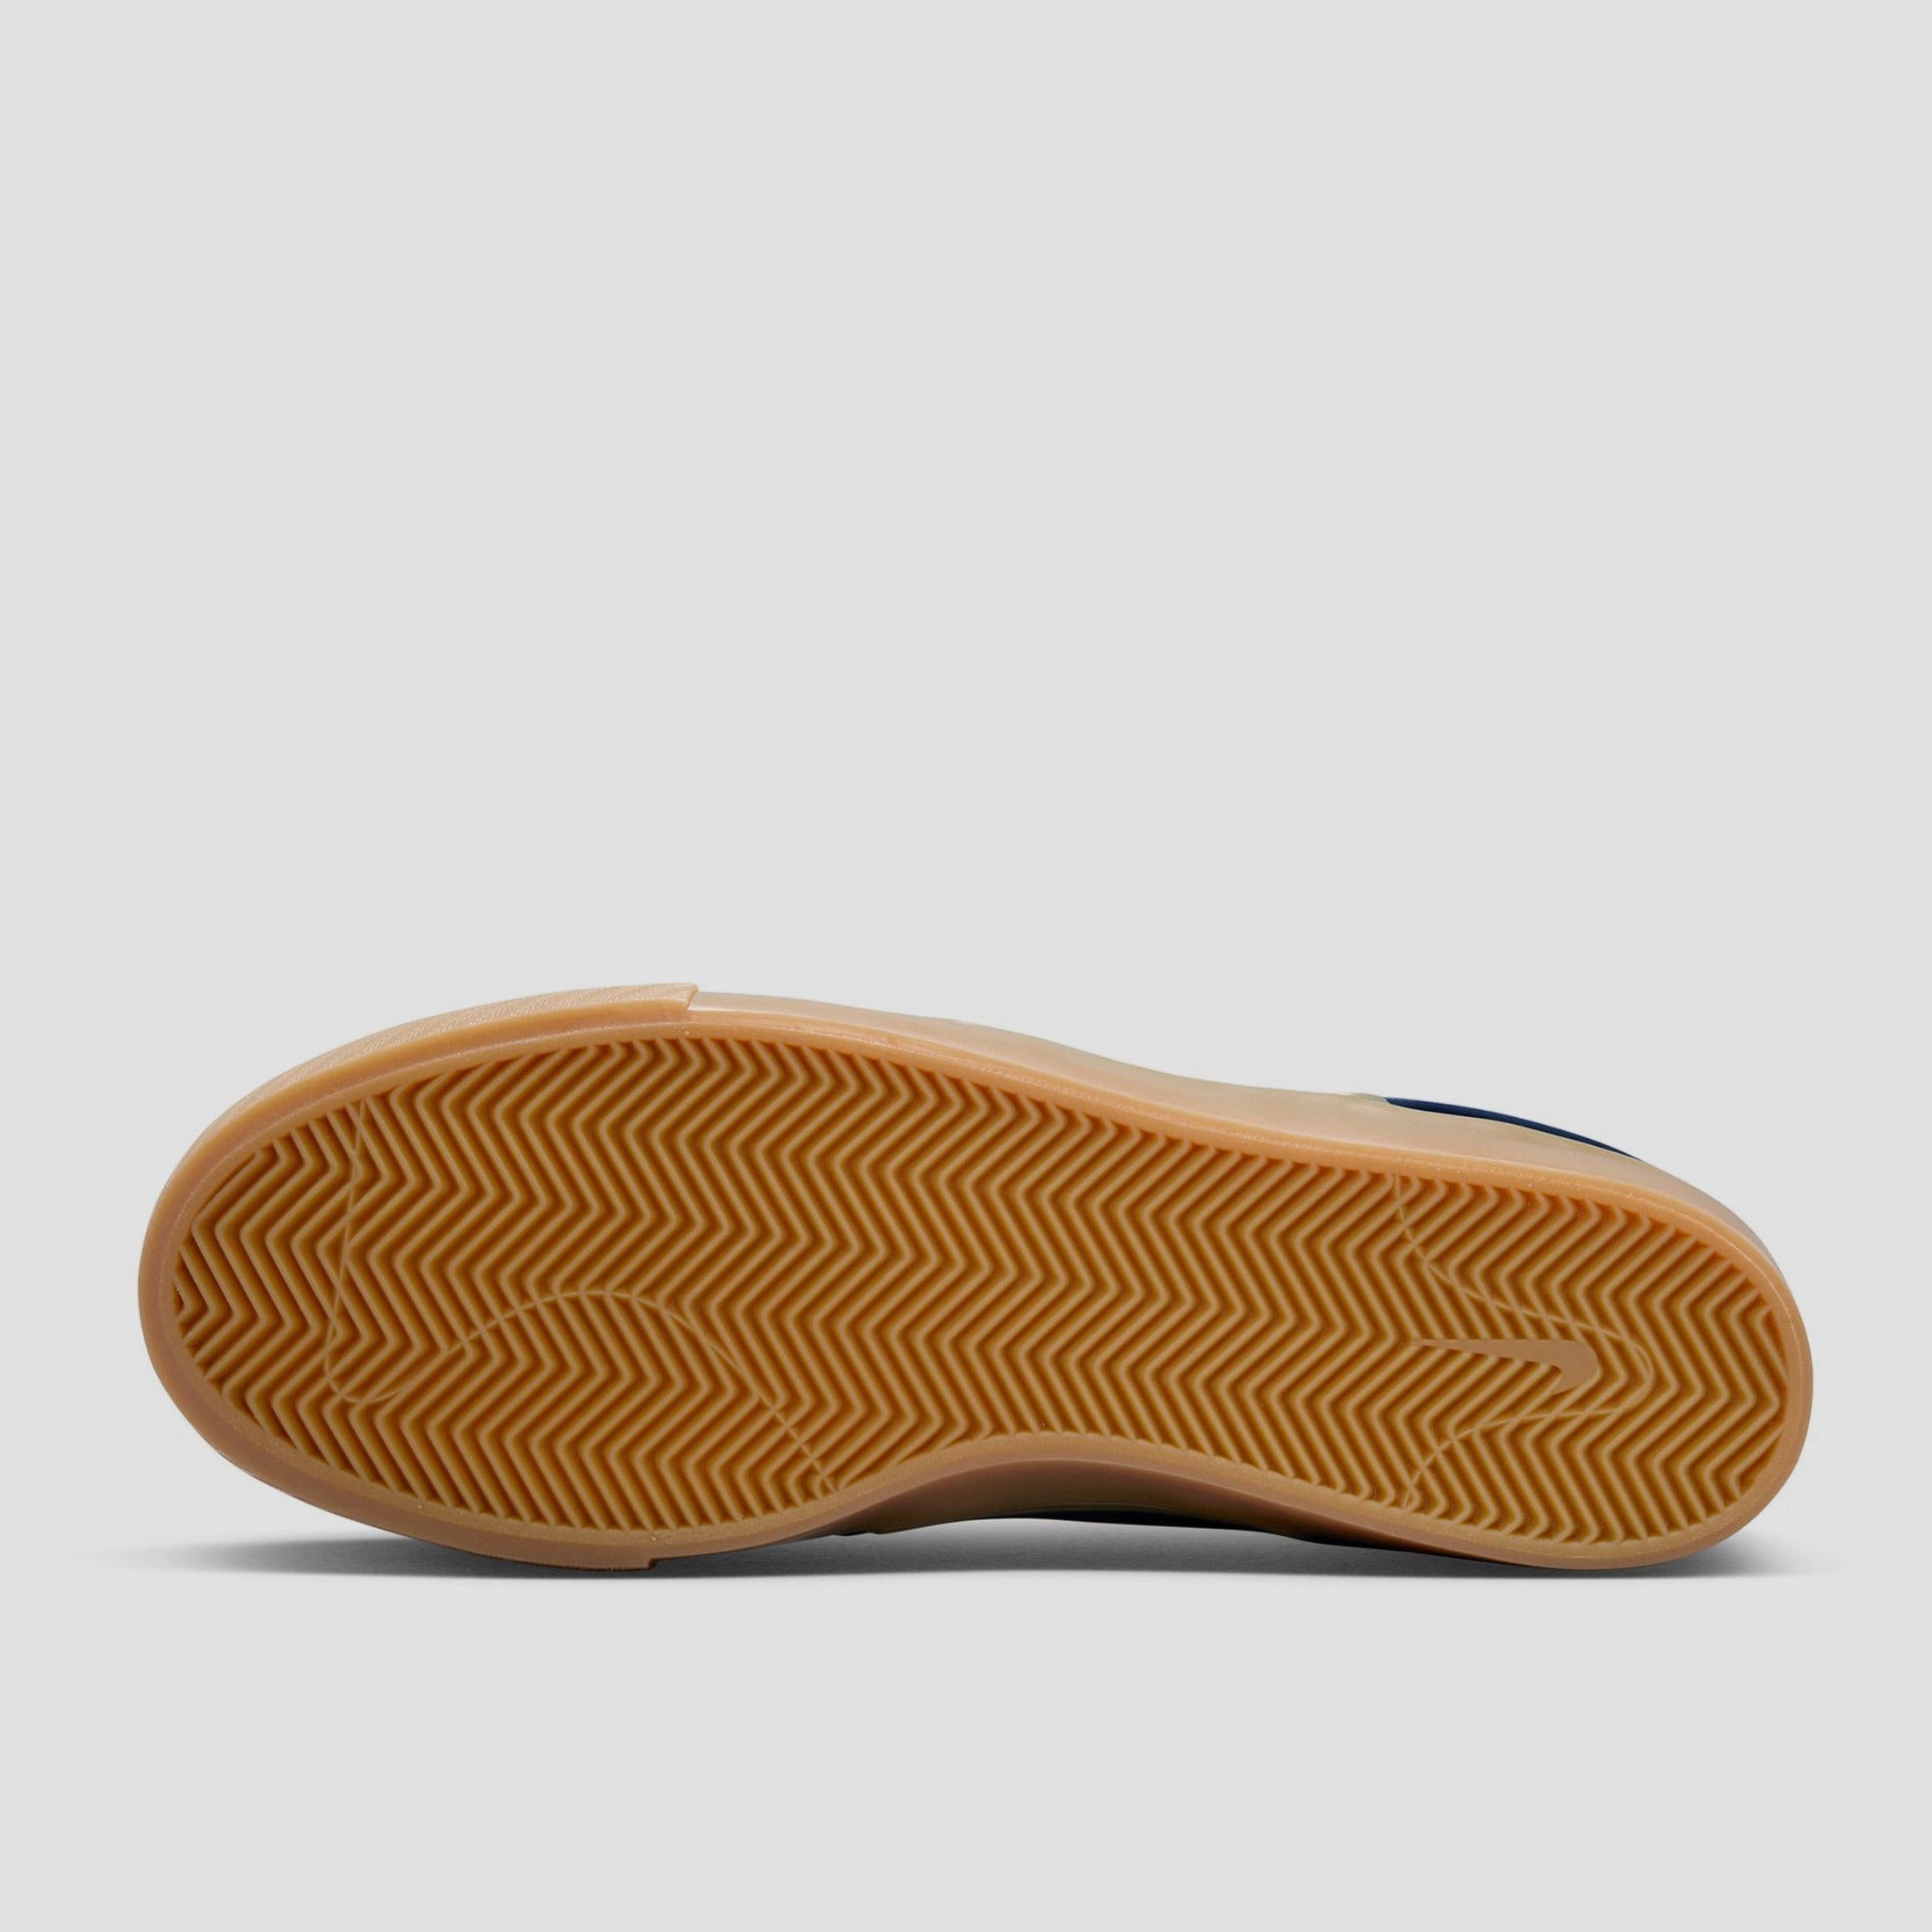 Nike SB Zoom Janoski OG+ Skate Shoes Navy / White - Navy - Gum Light Brown